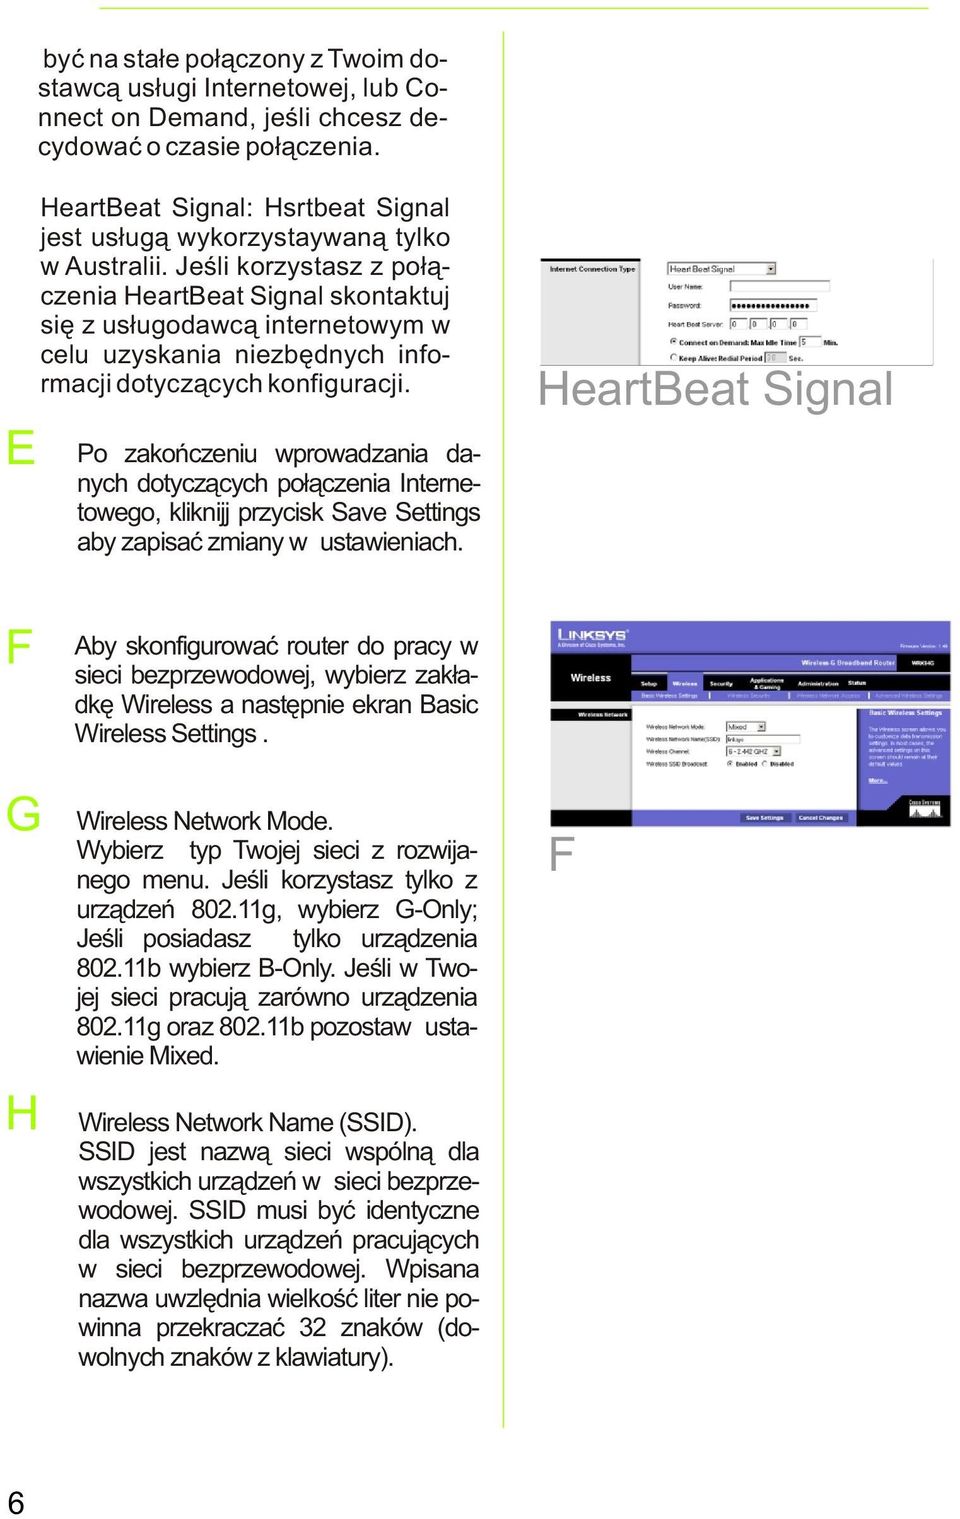 Jeœli korzystasz z po³¹czenia HeartBeat Signal skontaktuj siê z us³ugodawc¹ internetowym w celu uzyskania niezbêdnych informacji dotycz¹cych konfiguracji.